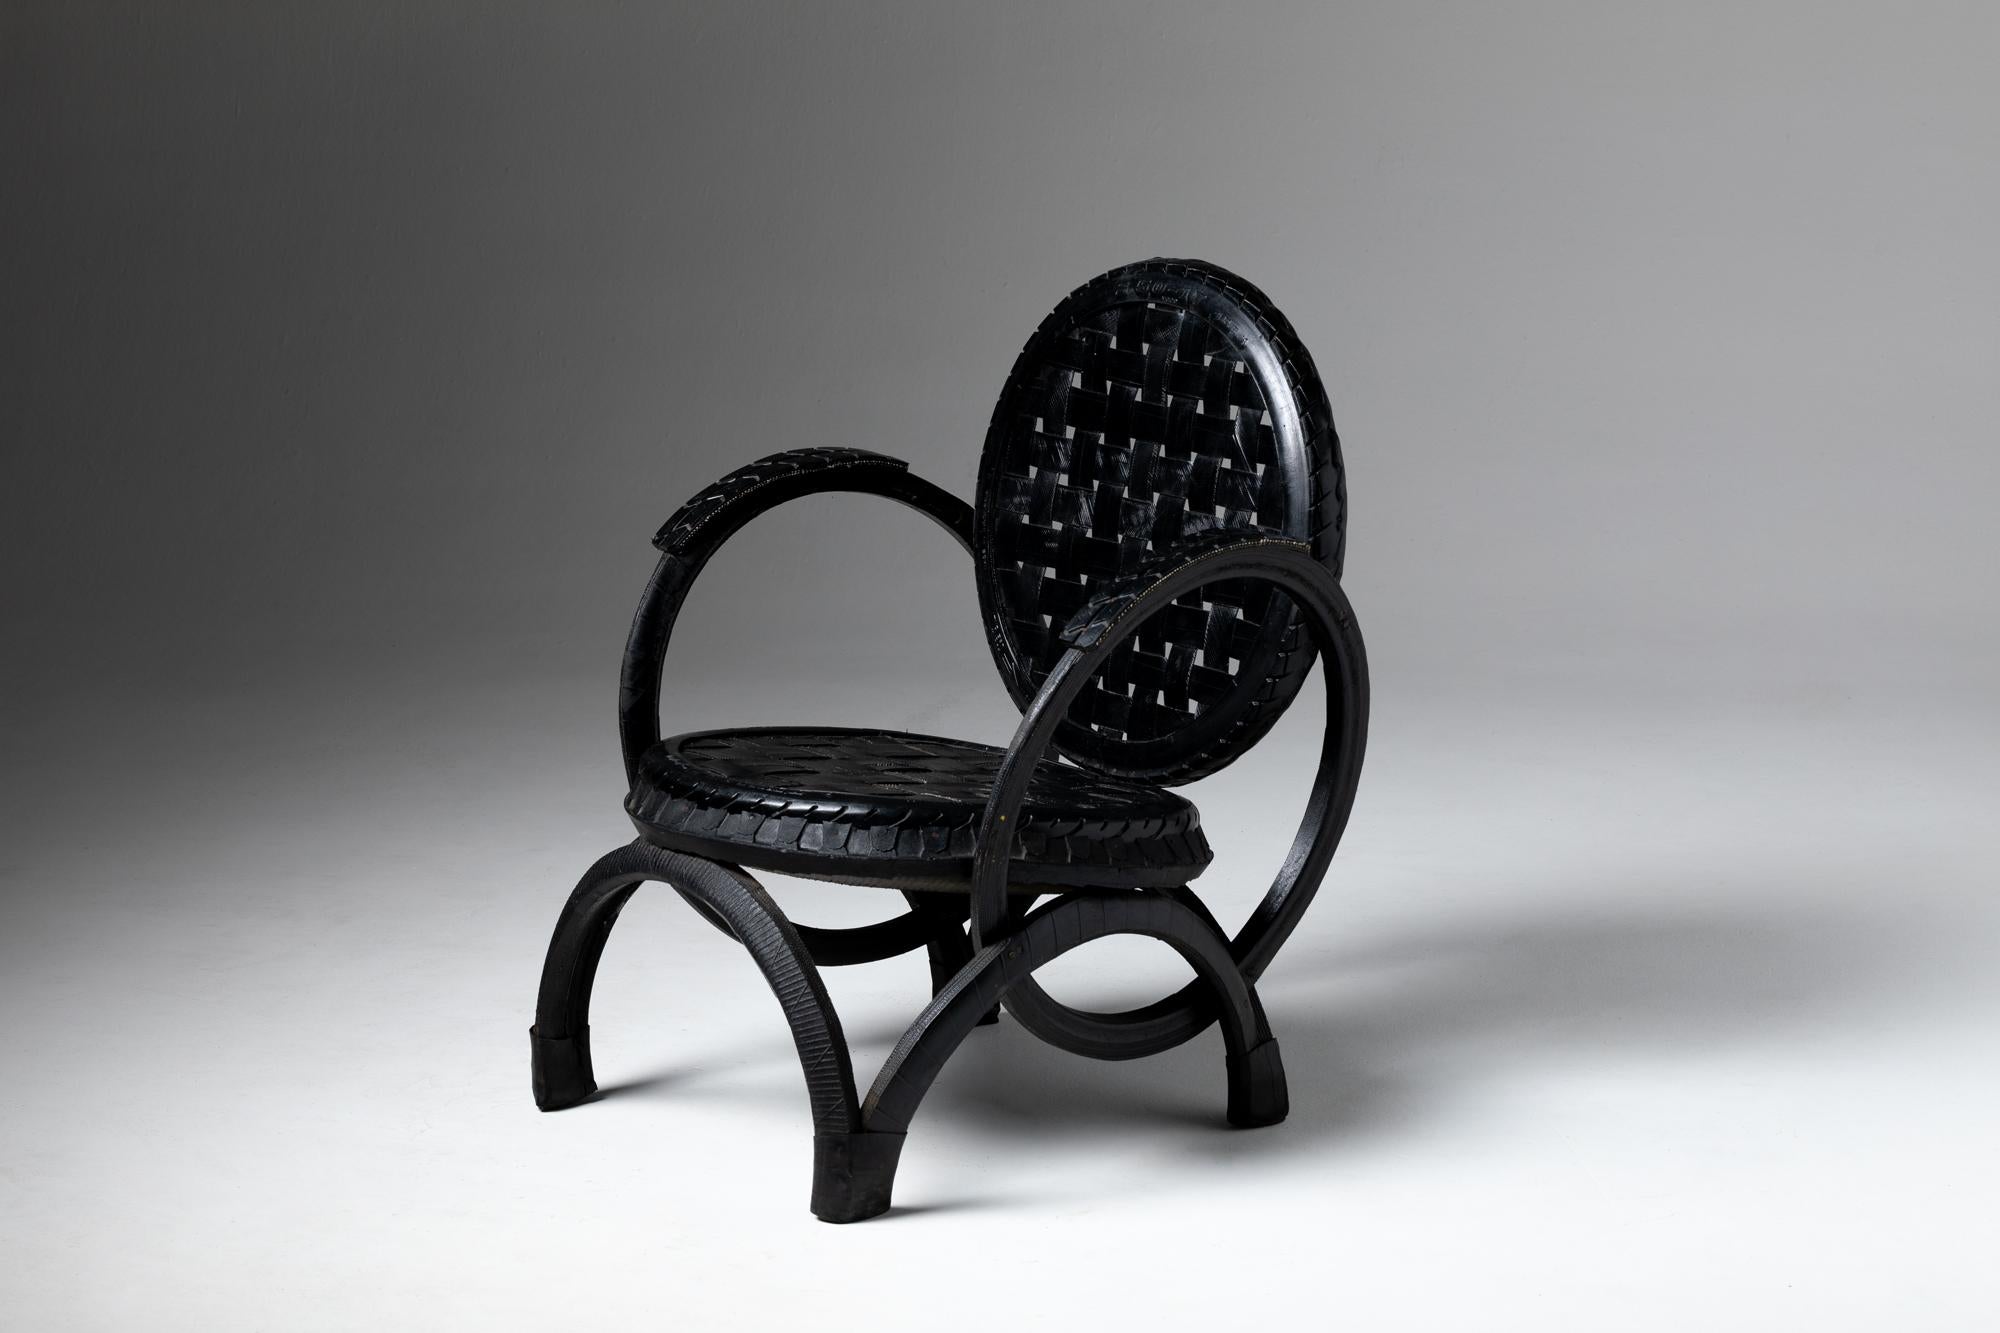 Dieses besondere Stück zeigt die Möglichkeit, einen Sitzstuhl mit einem ergänzenden MATERIAL herzustellen - der Verwendung von vulkanisiertem Gummi, das für Straßenreifen verwendet wird.

Nachhaltigkeit, die auf die Auswirkungen des harten